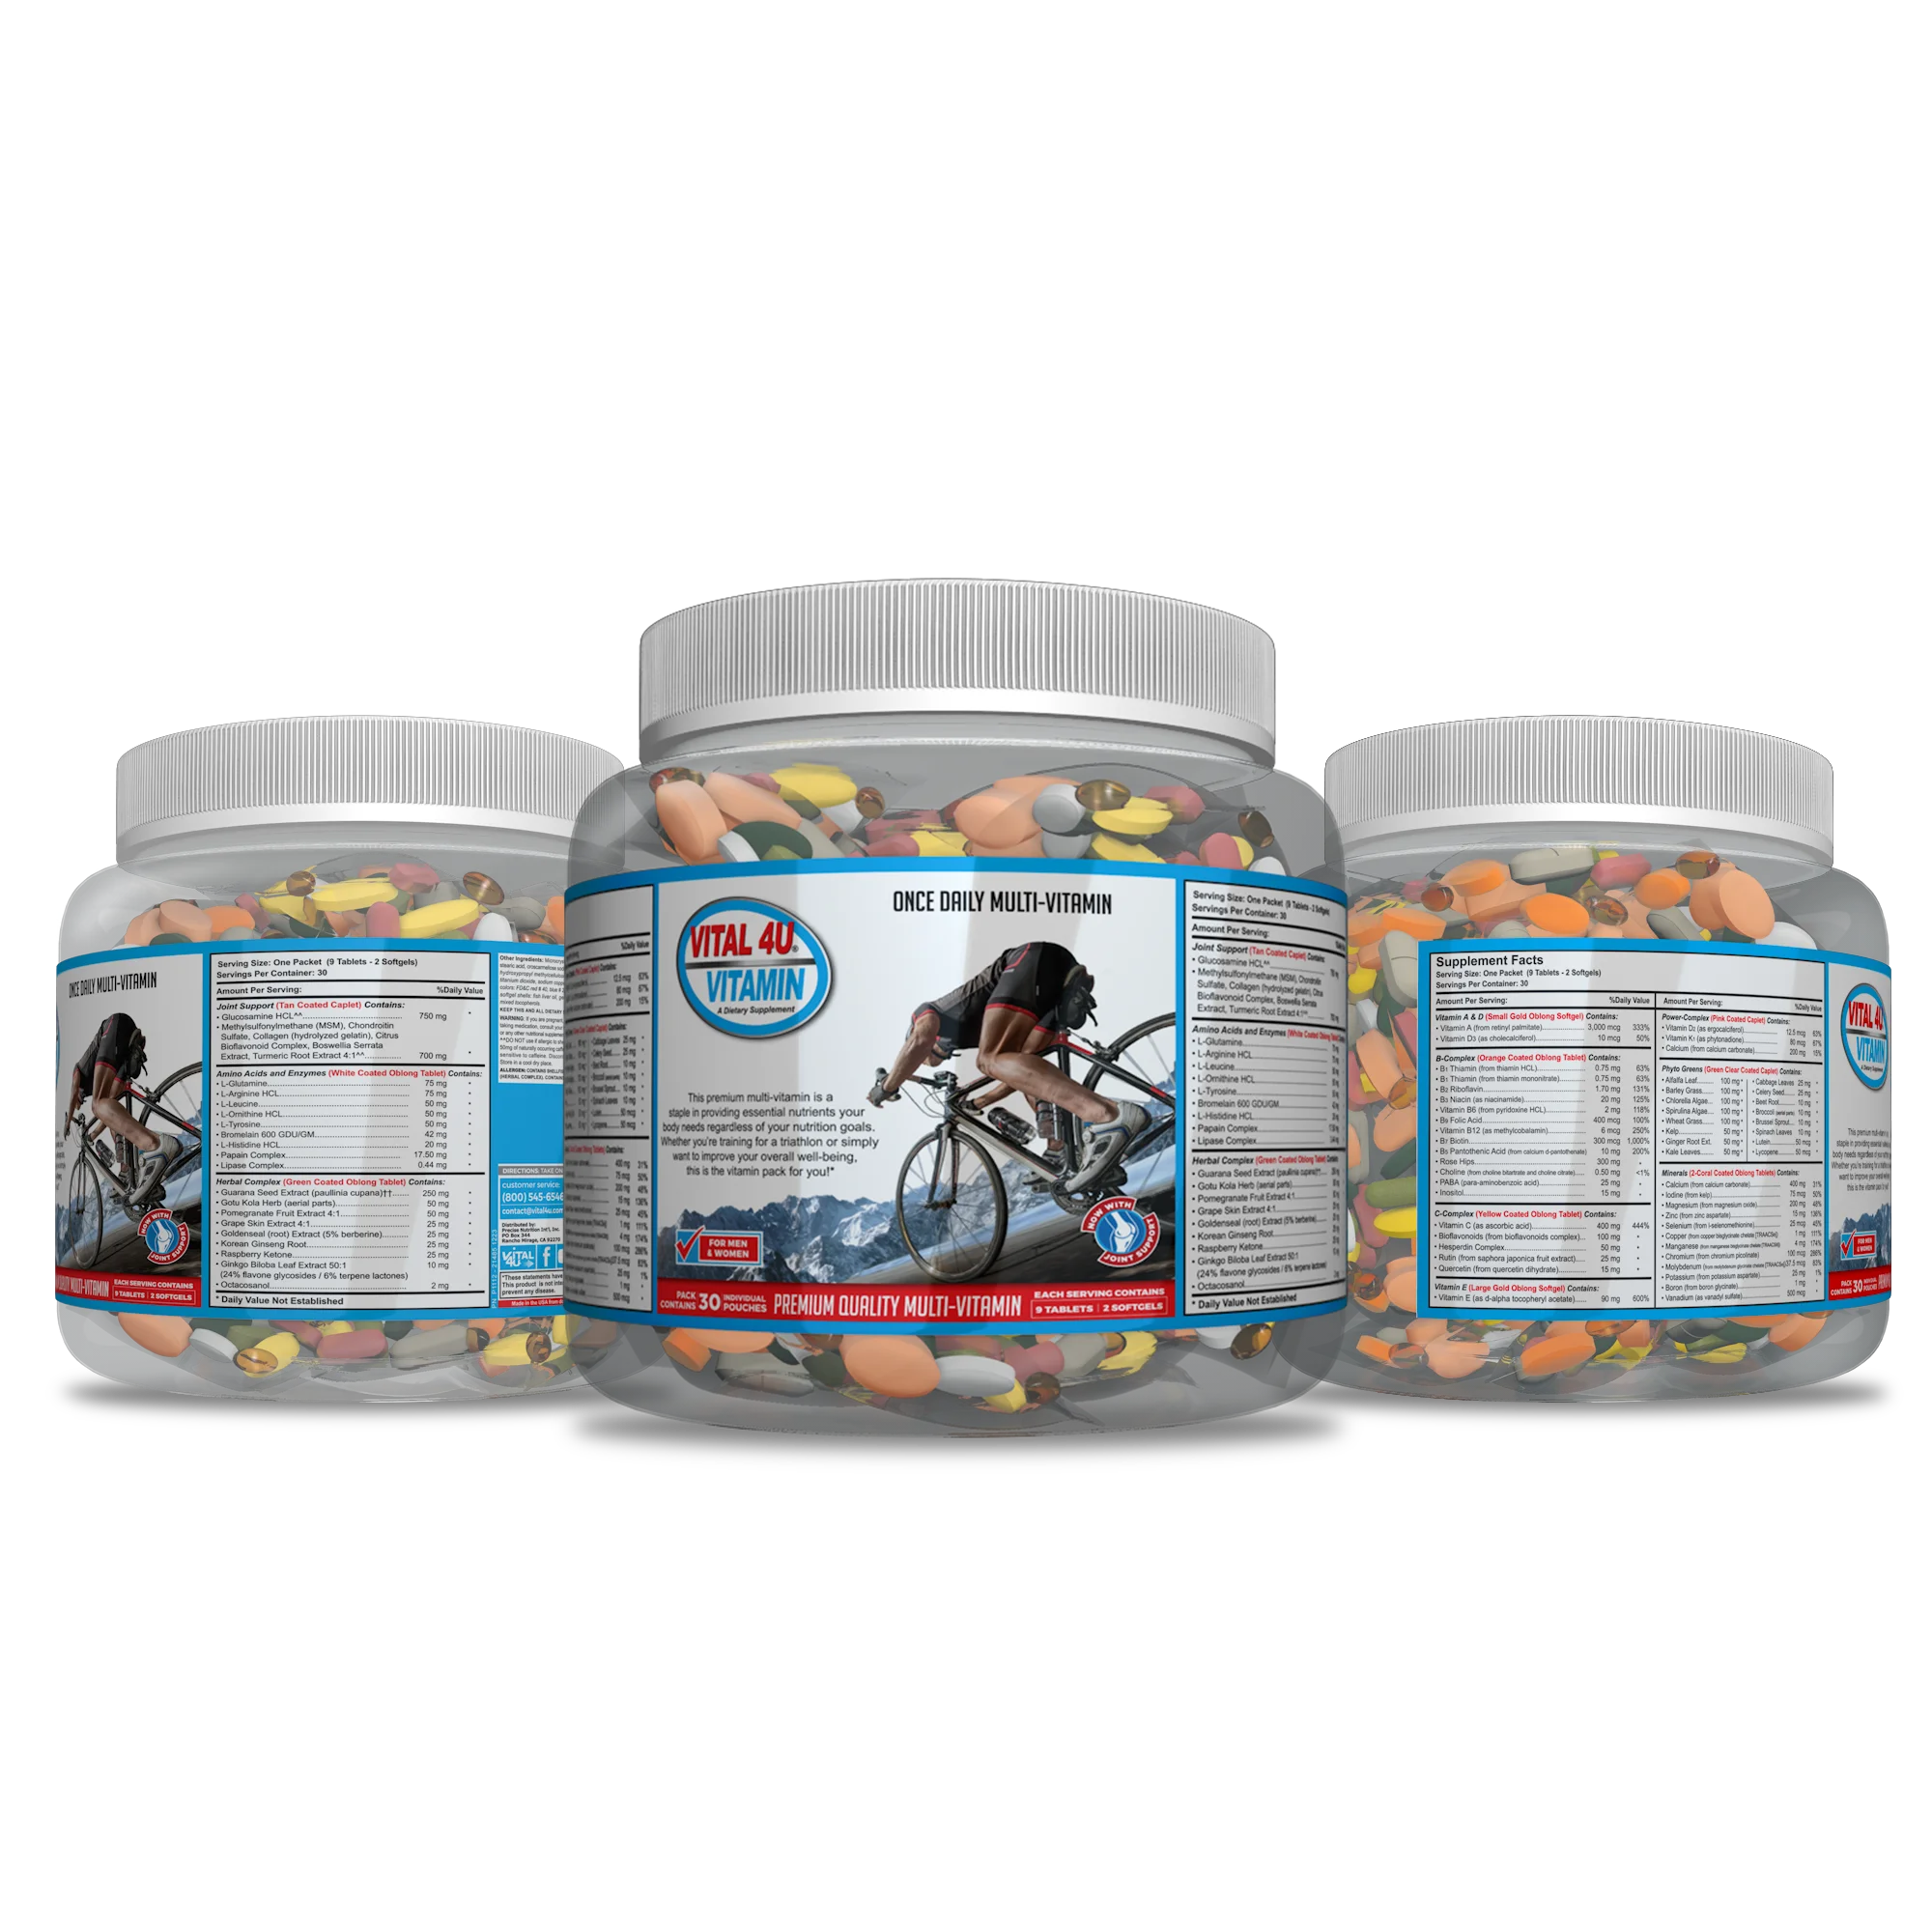 Vital 4U Vitamin Premium Quality Multivitamin 30 Day Supply Multiple Jars